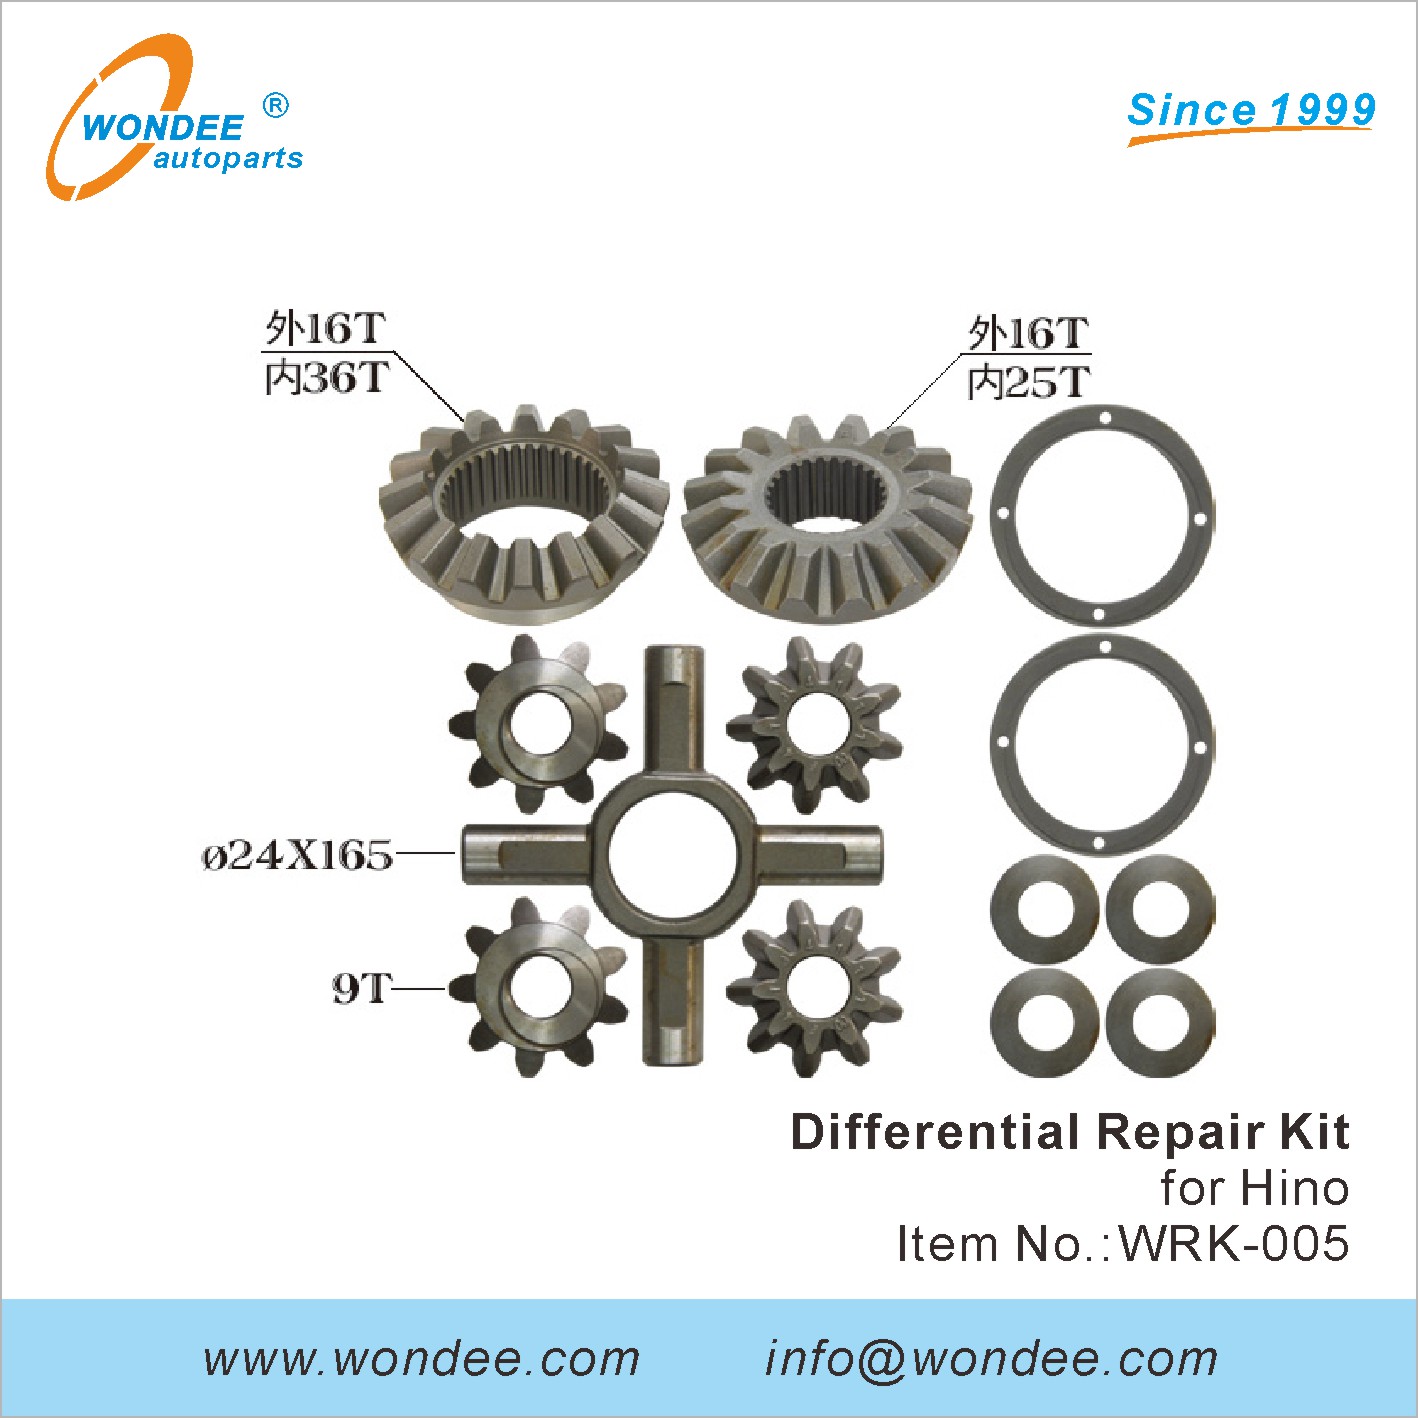 WONDEE differential repair kit (5)